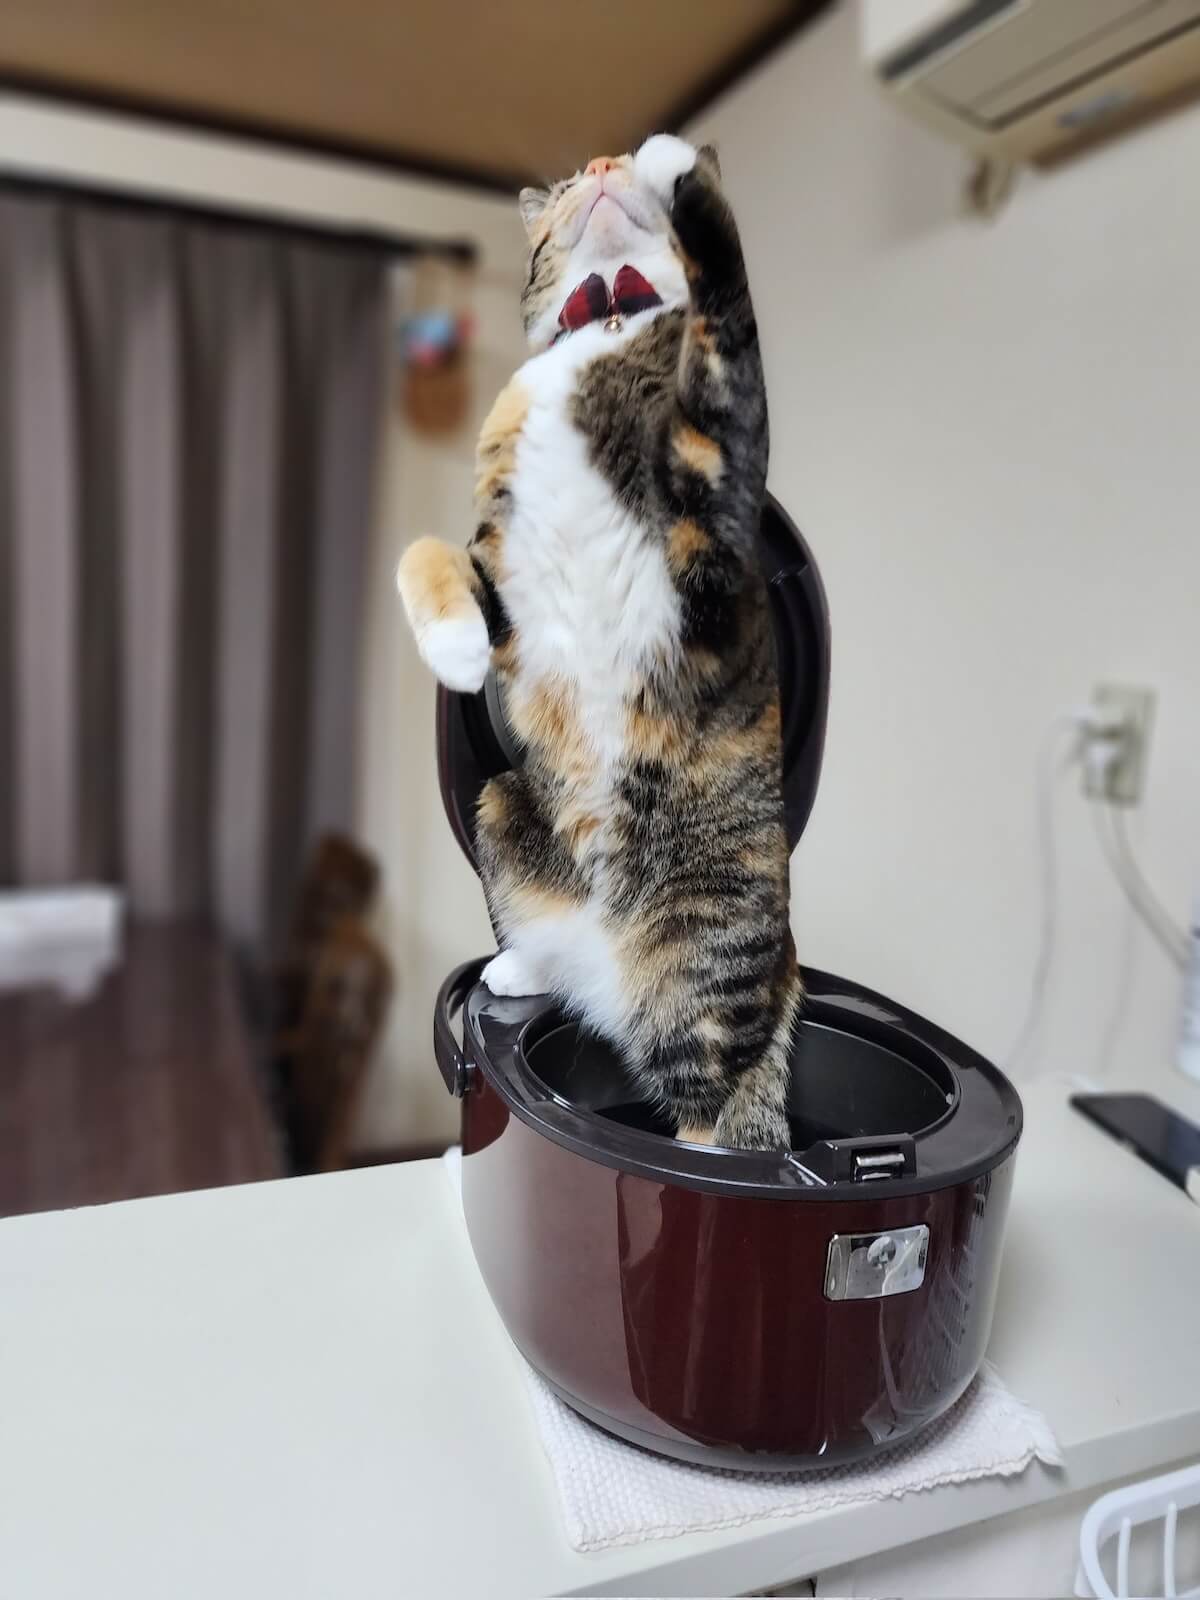 炊飯器の上にがに股で立ち上がる猫